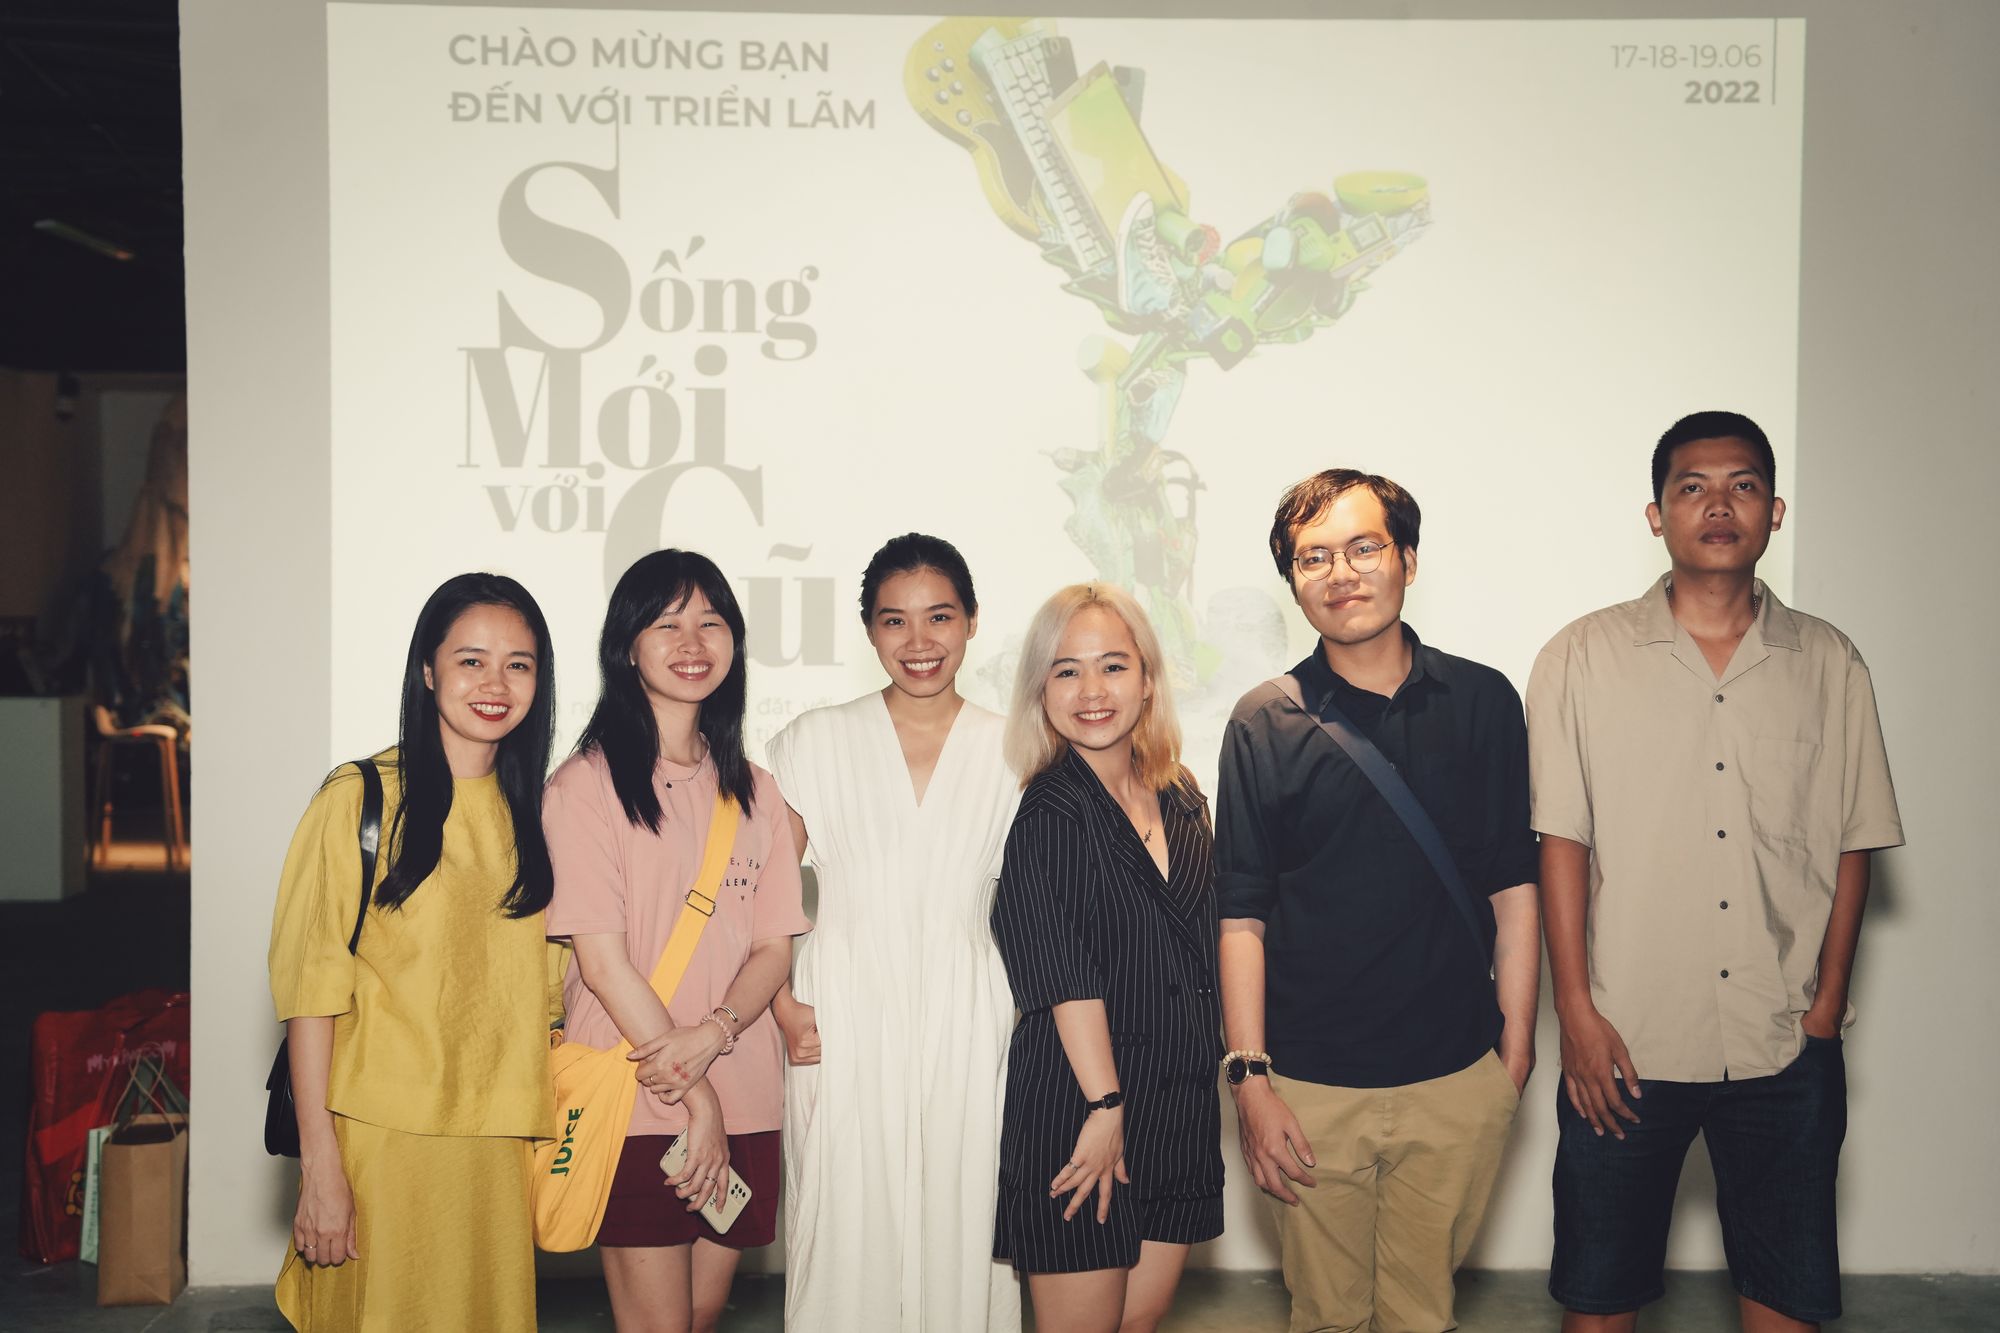 [Vietnamese Blog] Làm sự kiện là cái nghề của đam mê | People at Chợ Tốt 05